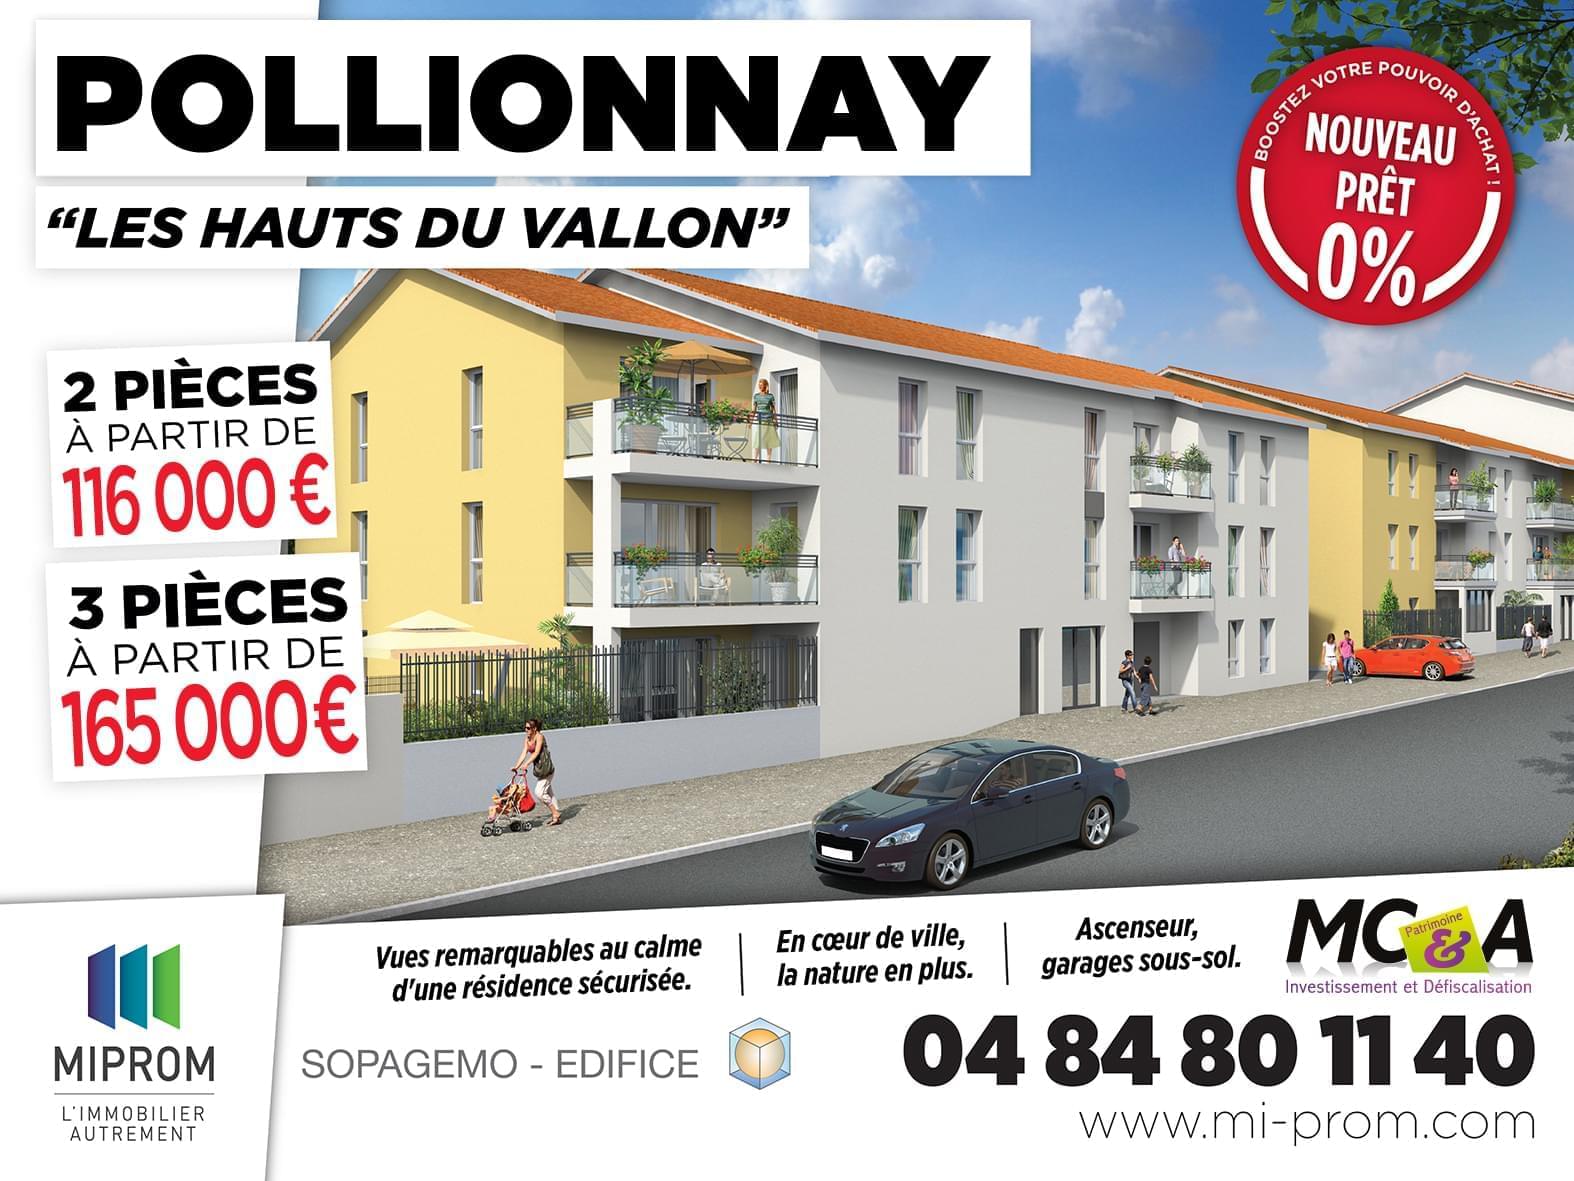 Résidence à Pollionnay Beaux volumes et surfaces, Appartements lumineux, Idéal pour habiter ou investir,